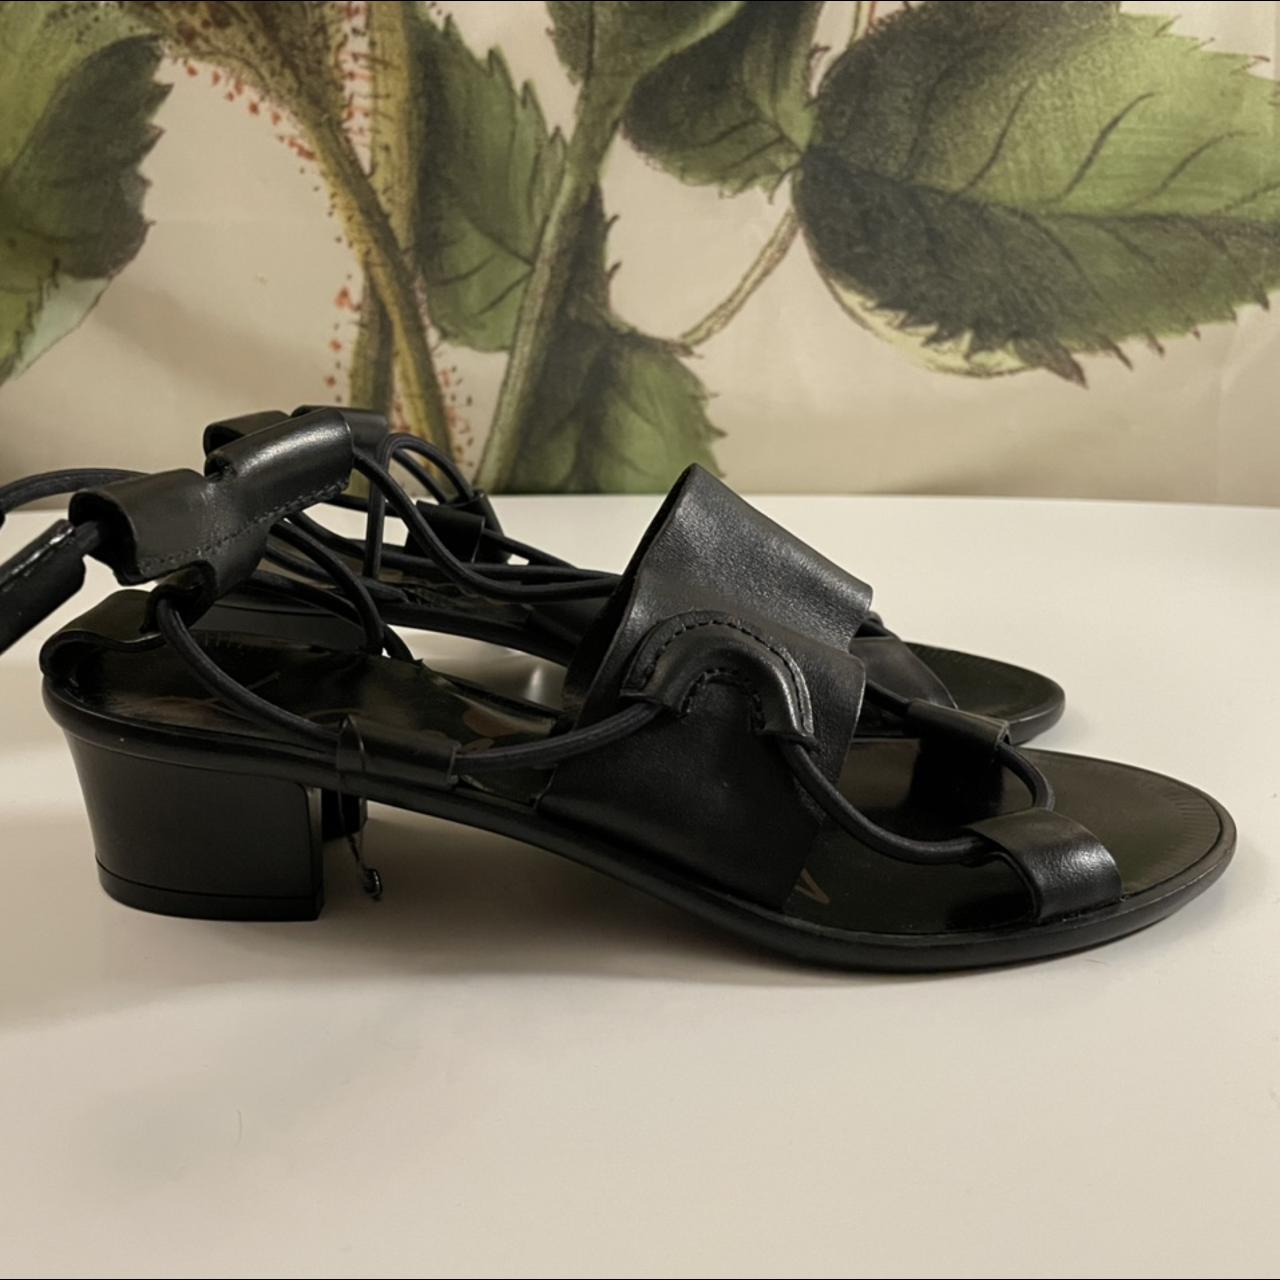 Lanvin Women's Black Sandals